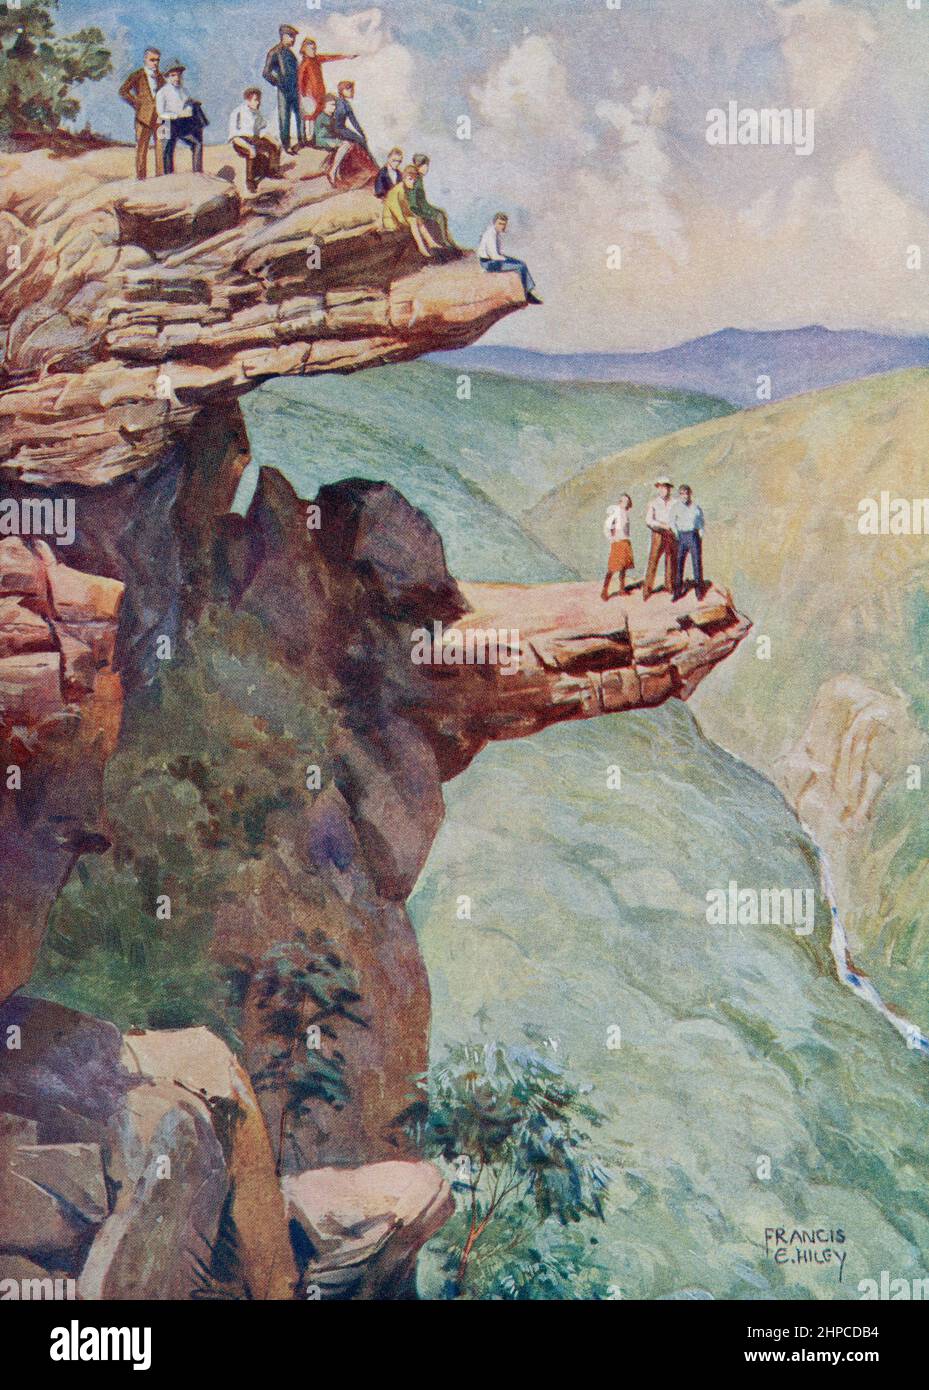 Blick auf einen Granitfelsen in den Grampian Mountains, Victoria, Australien. Aus dem Wonder Book of Science, erschienen in den 30er Jahren. Stockfoto